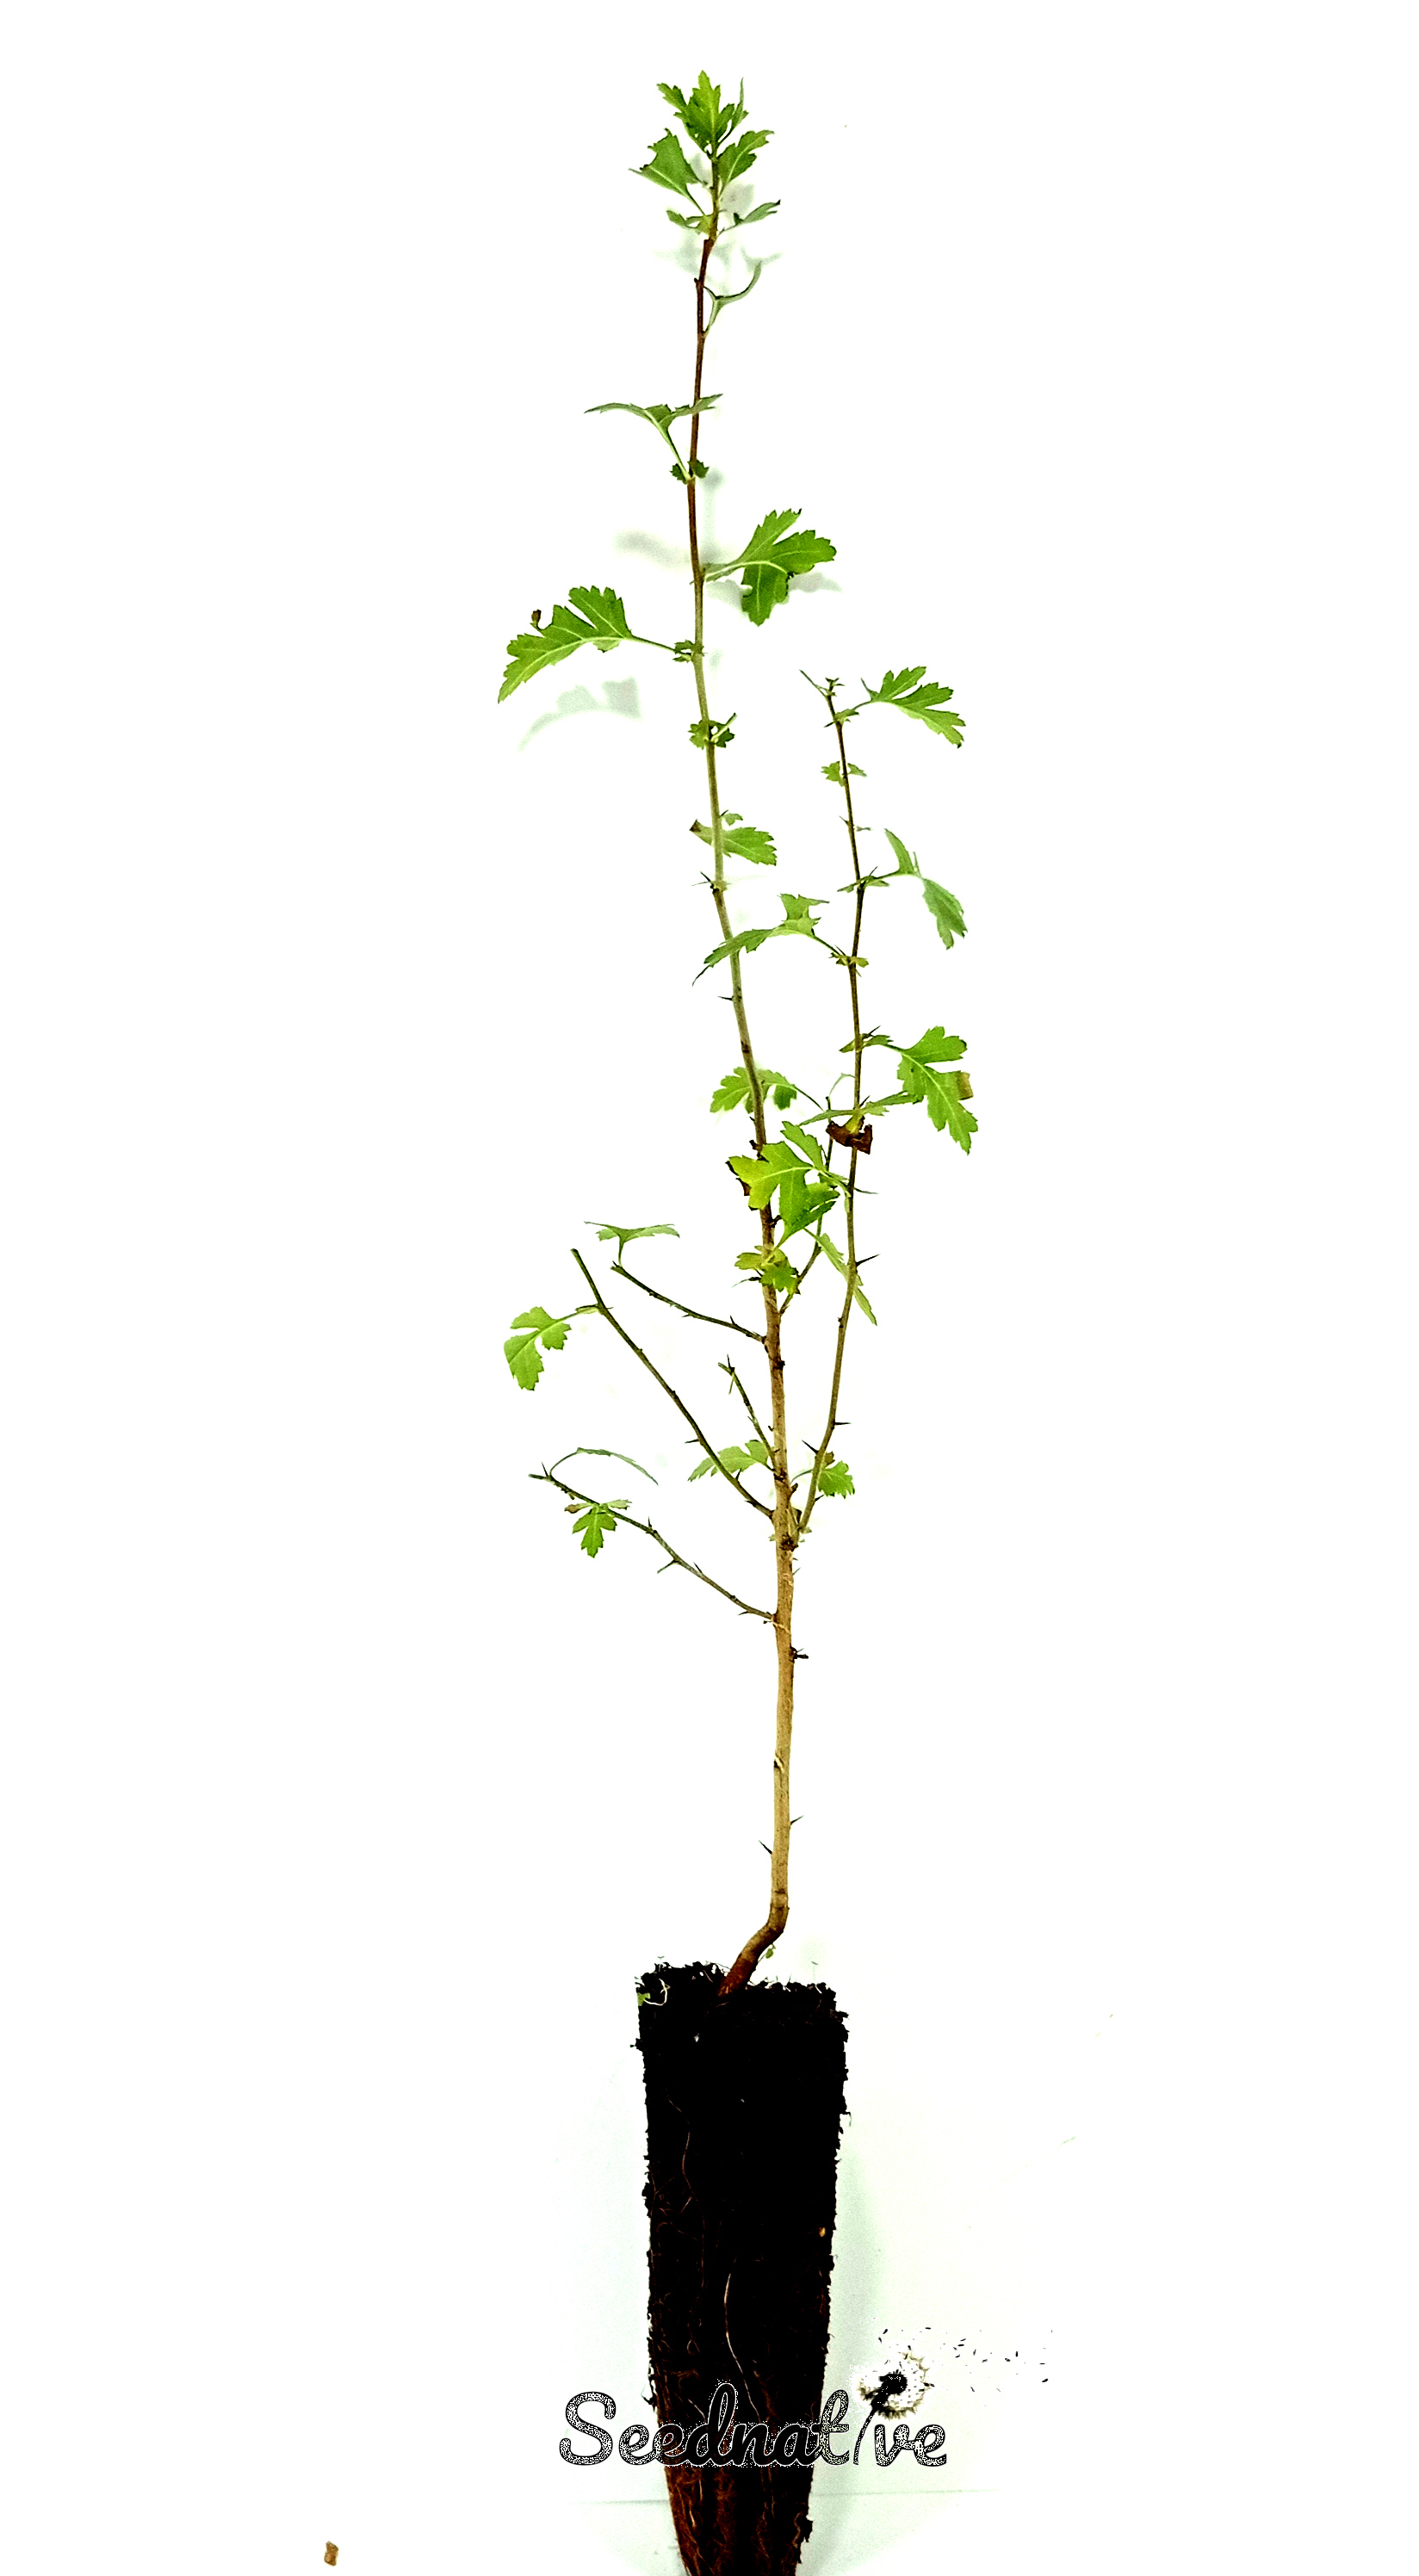 Planta de Crataegus monogyna - Espino albar - 2 años